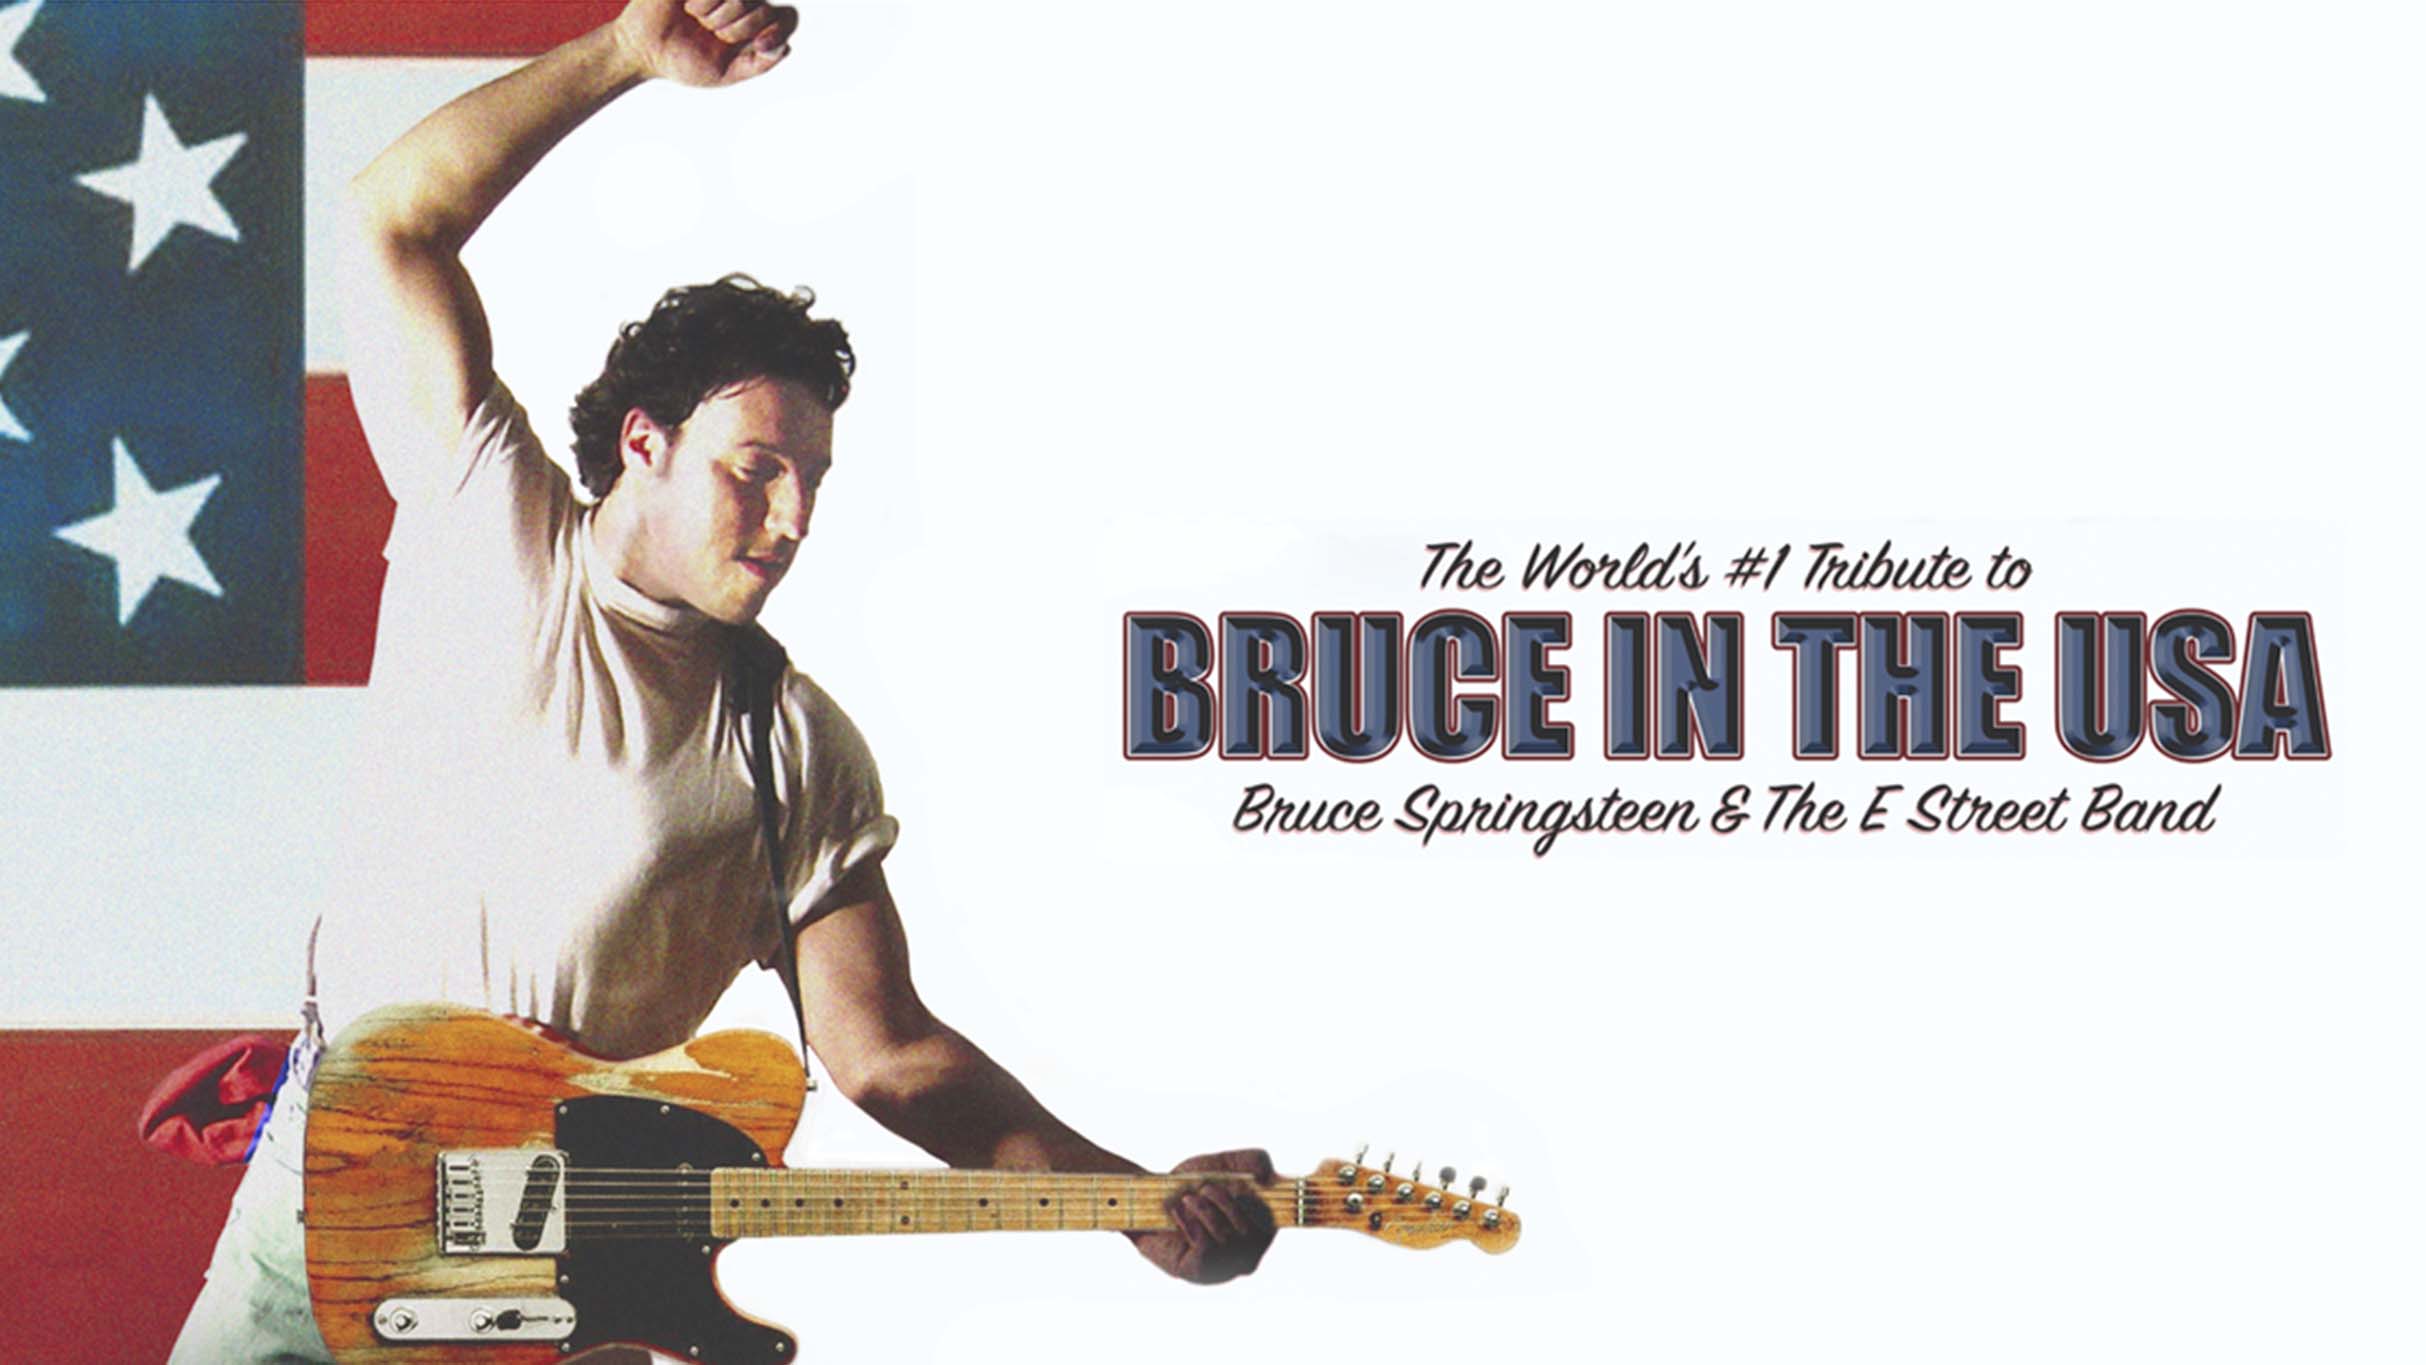 Bruce in the USA presales in Cincinnati